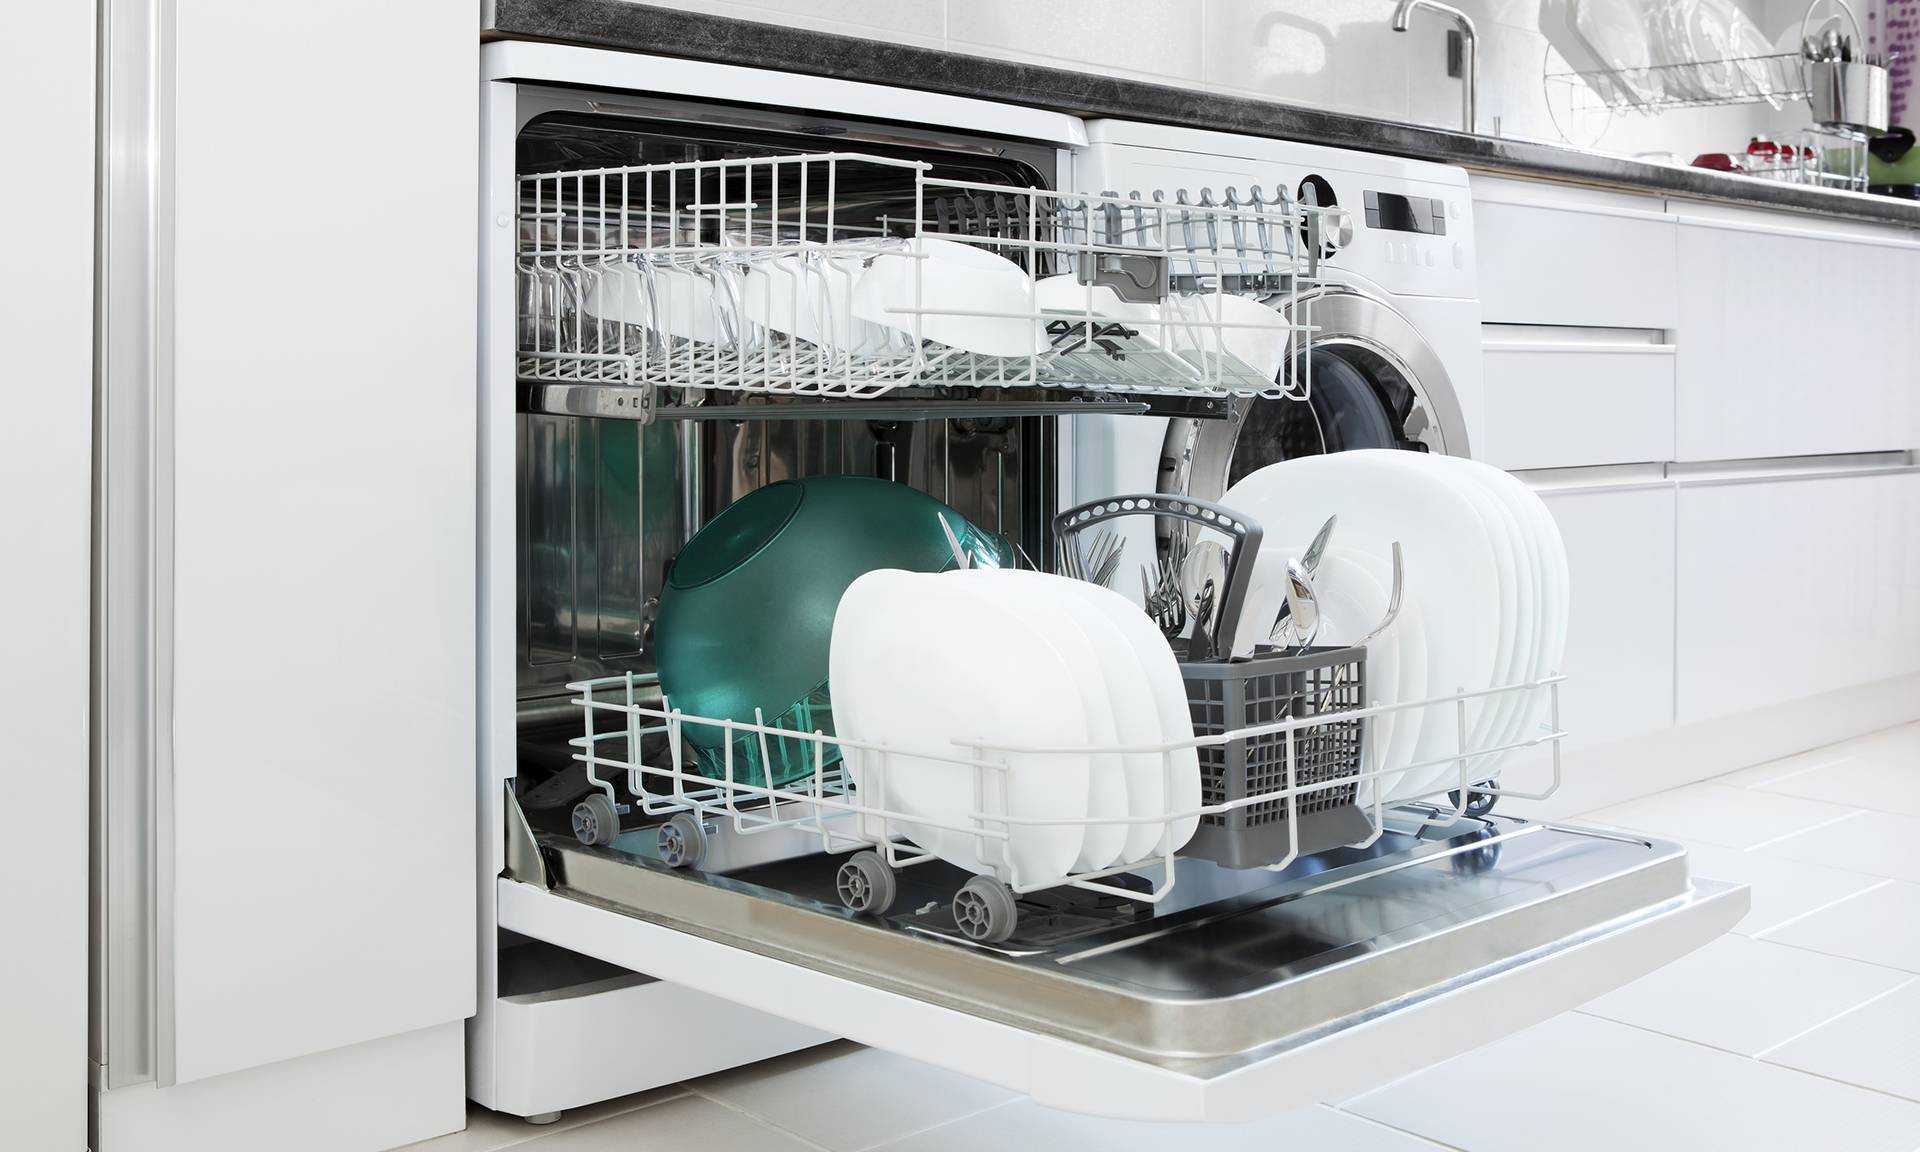 Сравнение лучших моделей встраиваемых посудомоечных машин bosch шириной 60 см